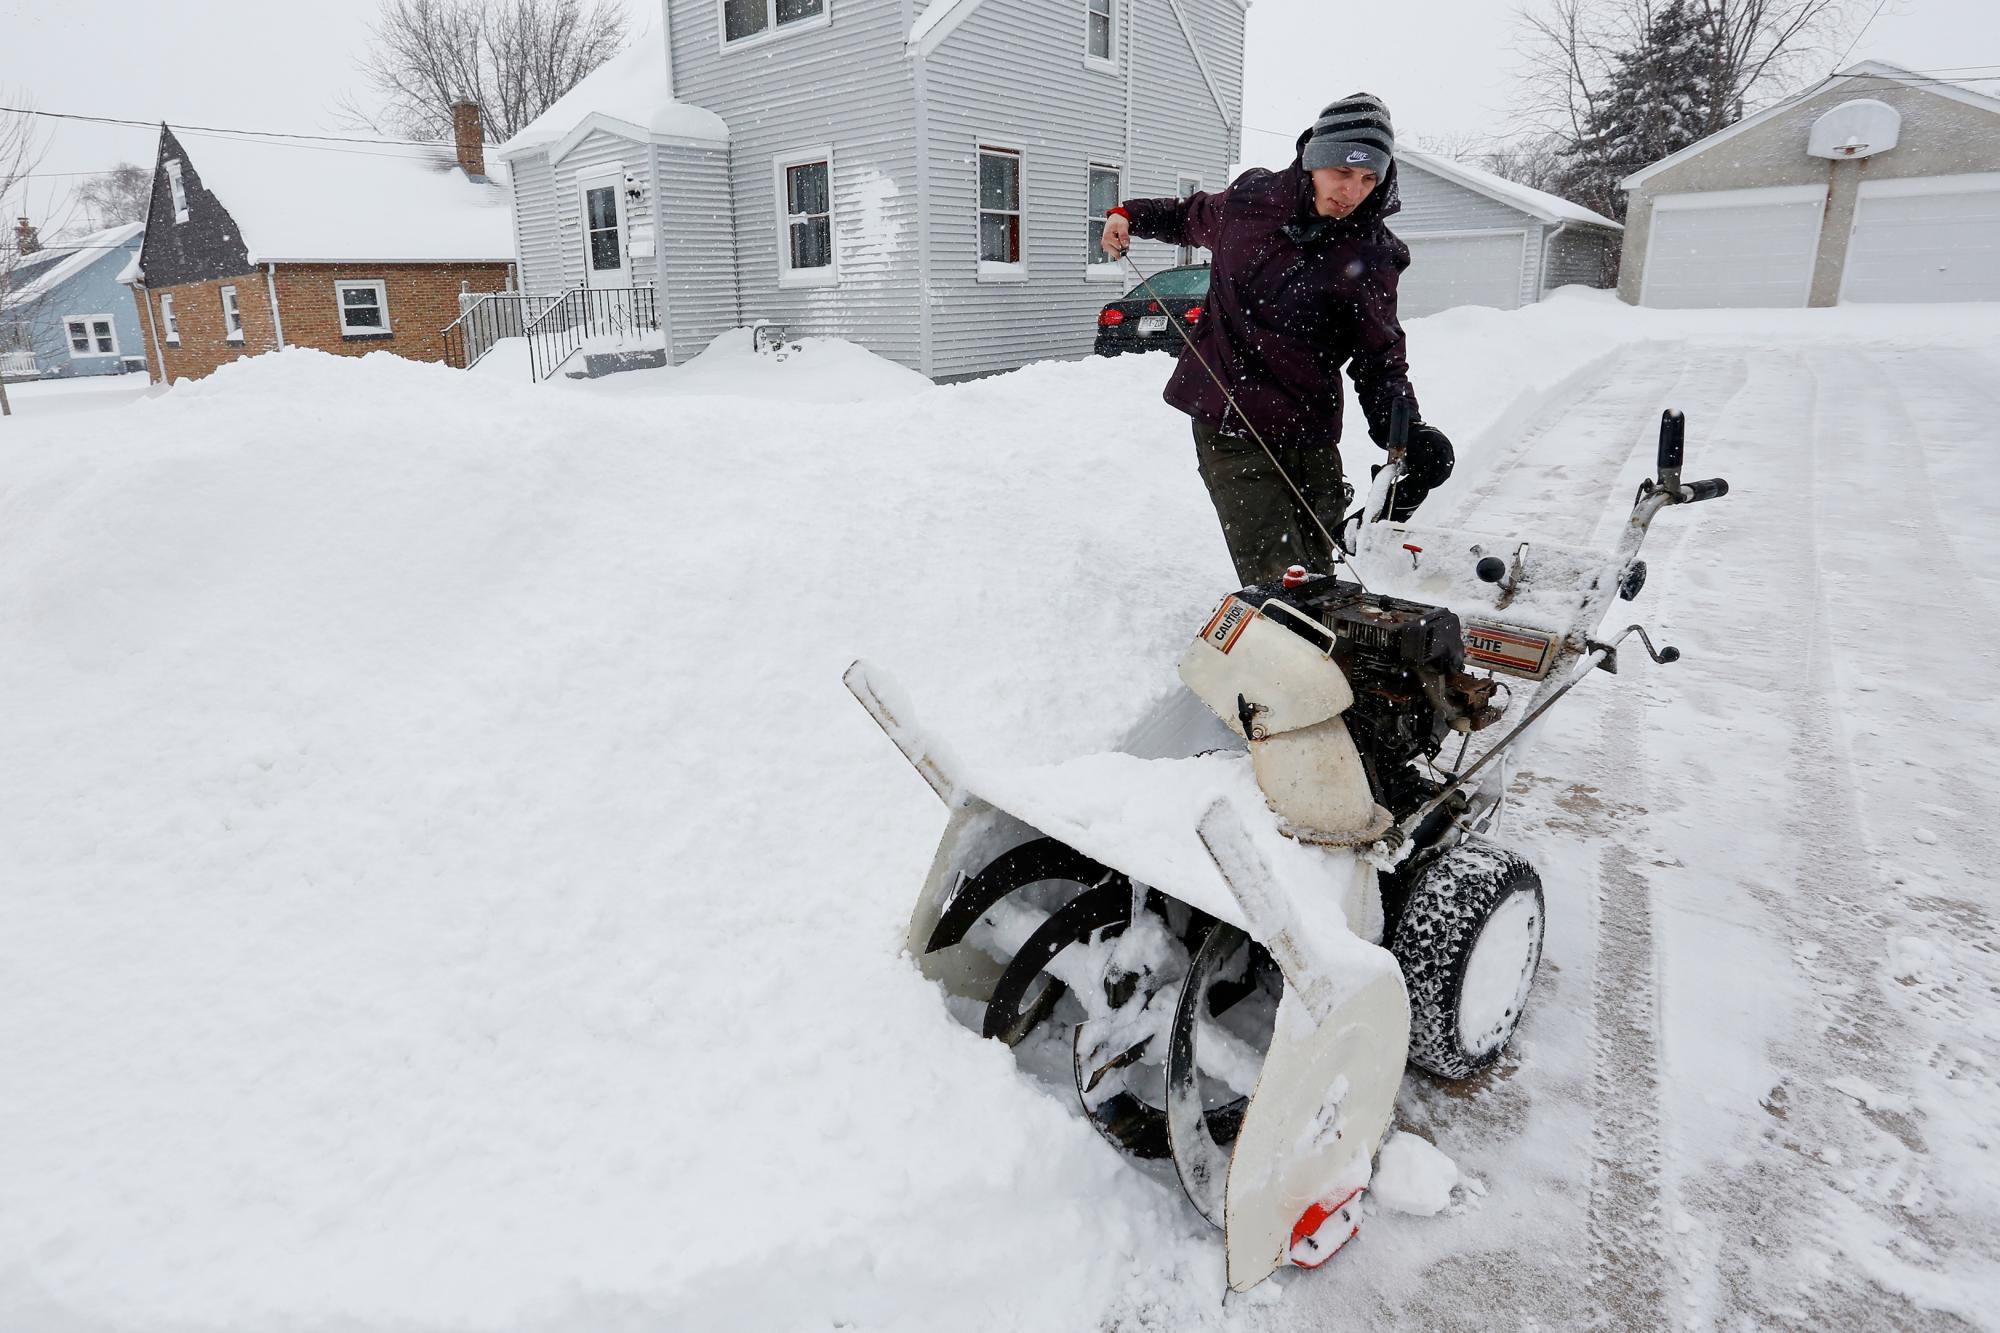 Charlie Zurek inicia su quitanieves para despejar la entrada de su vecino mientras la nieve cubre el área, el martes 12 de febrero de 2019, en Manitowoc, Wisconsin